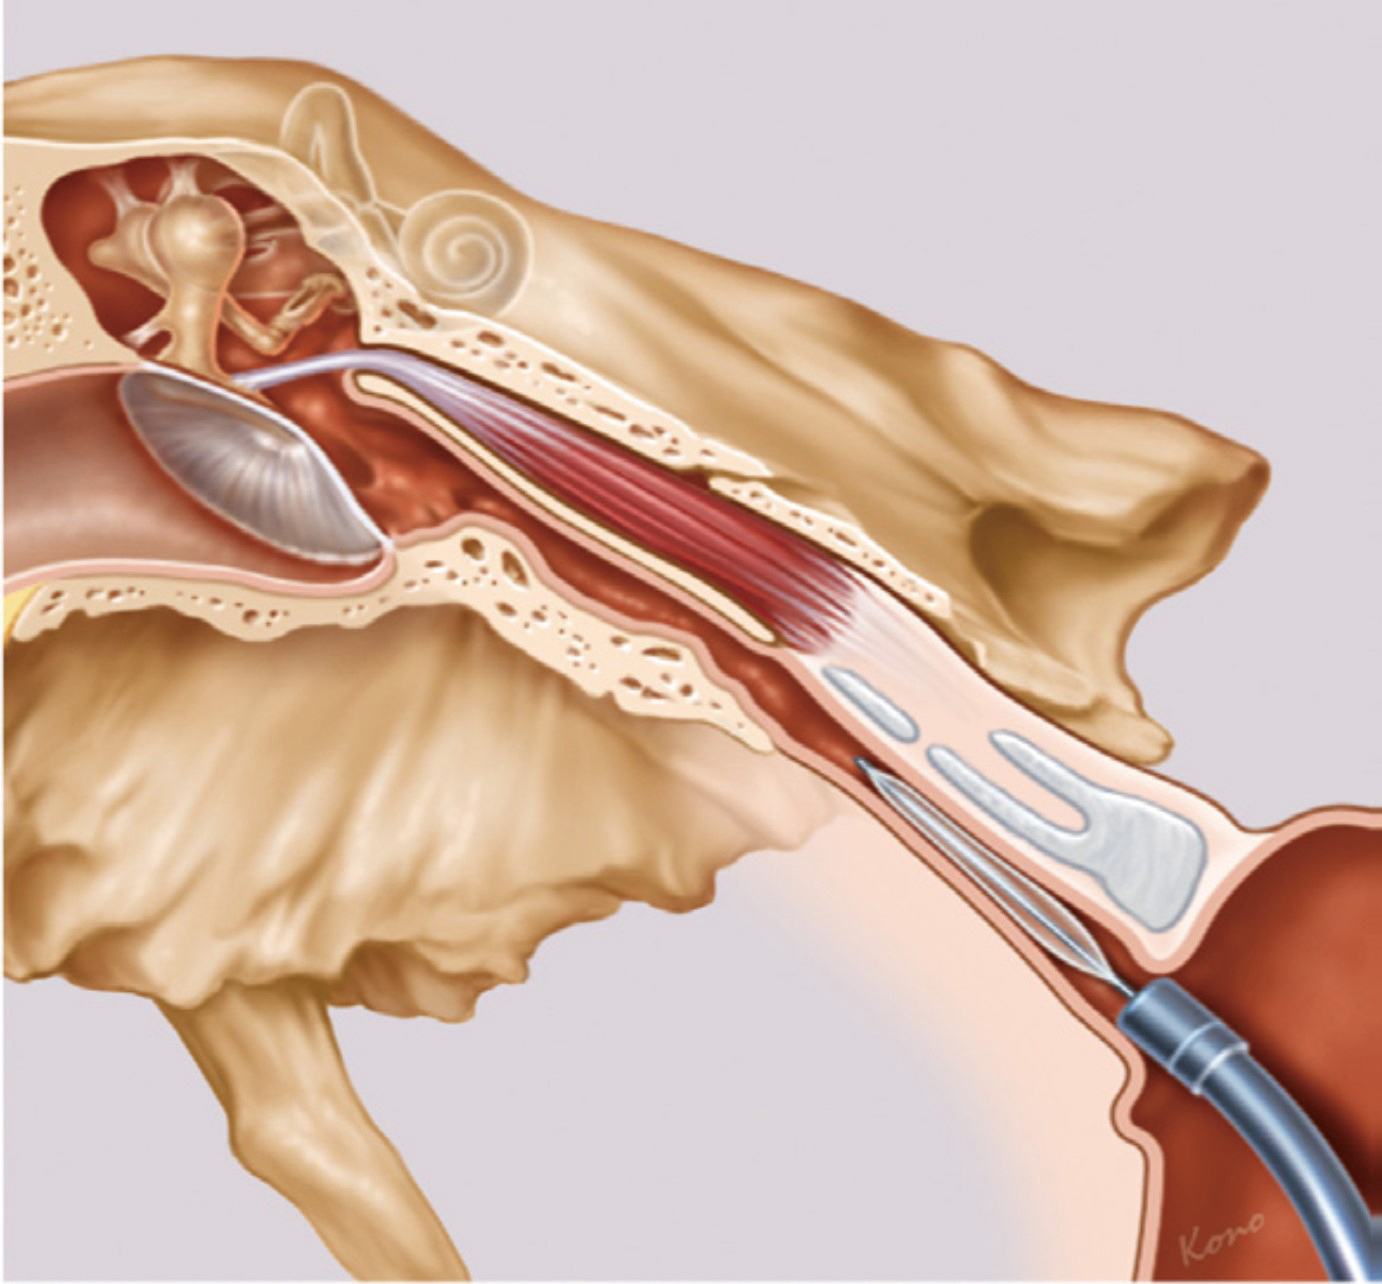 耳咽管氣球擴張成型手術01圖片來源SPIGGLEandTHEIS